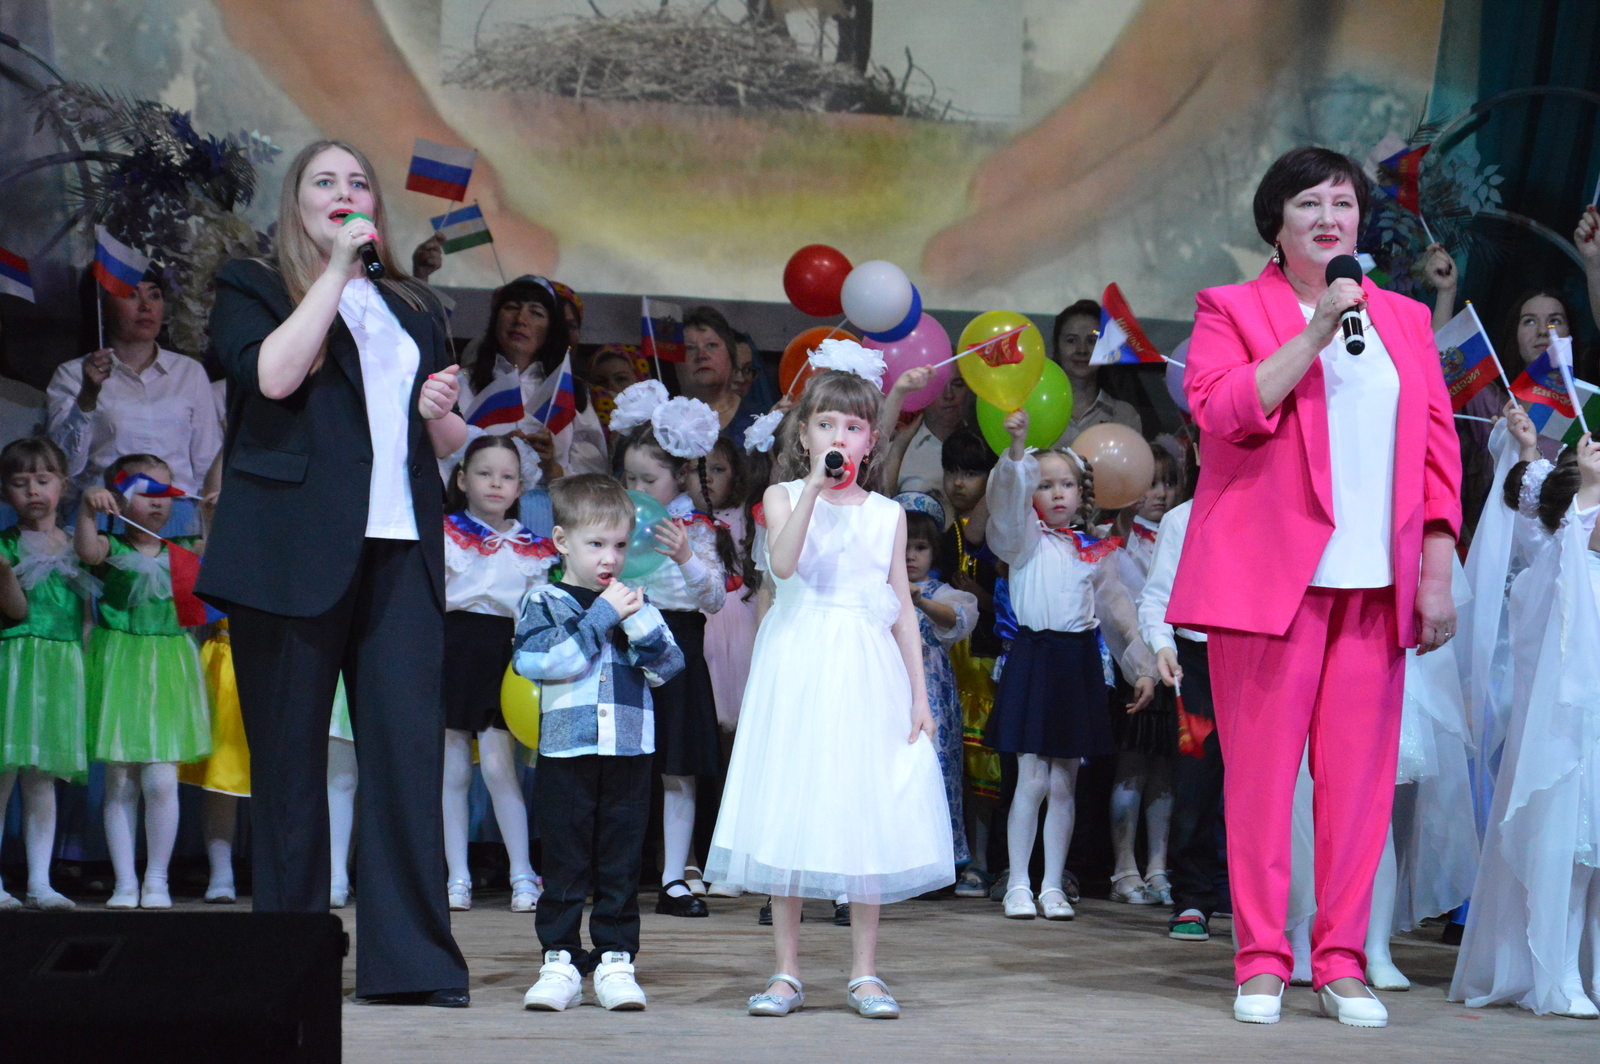 Сегодня в Месягутово состоялся районный фестиваль семейных ансамблей "Дети за мир на планете"